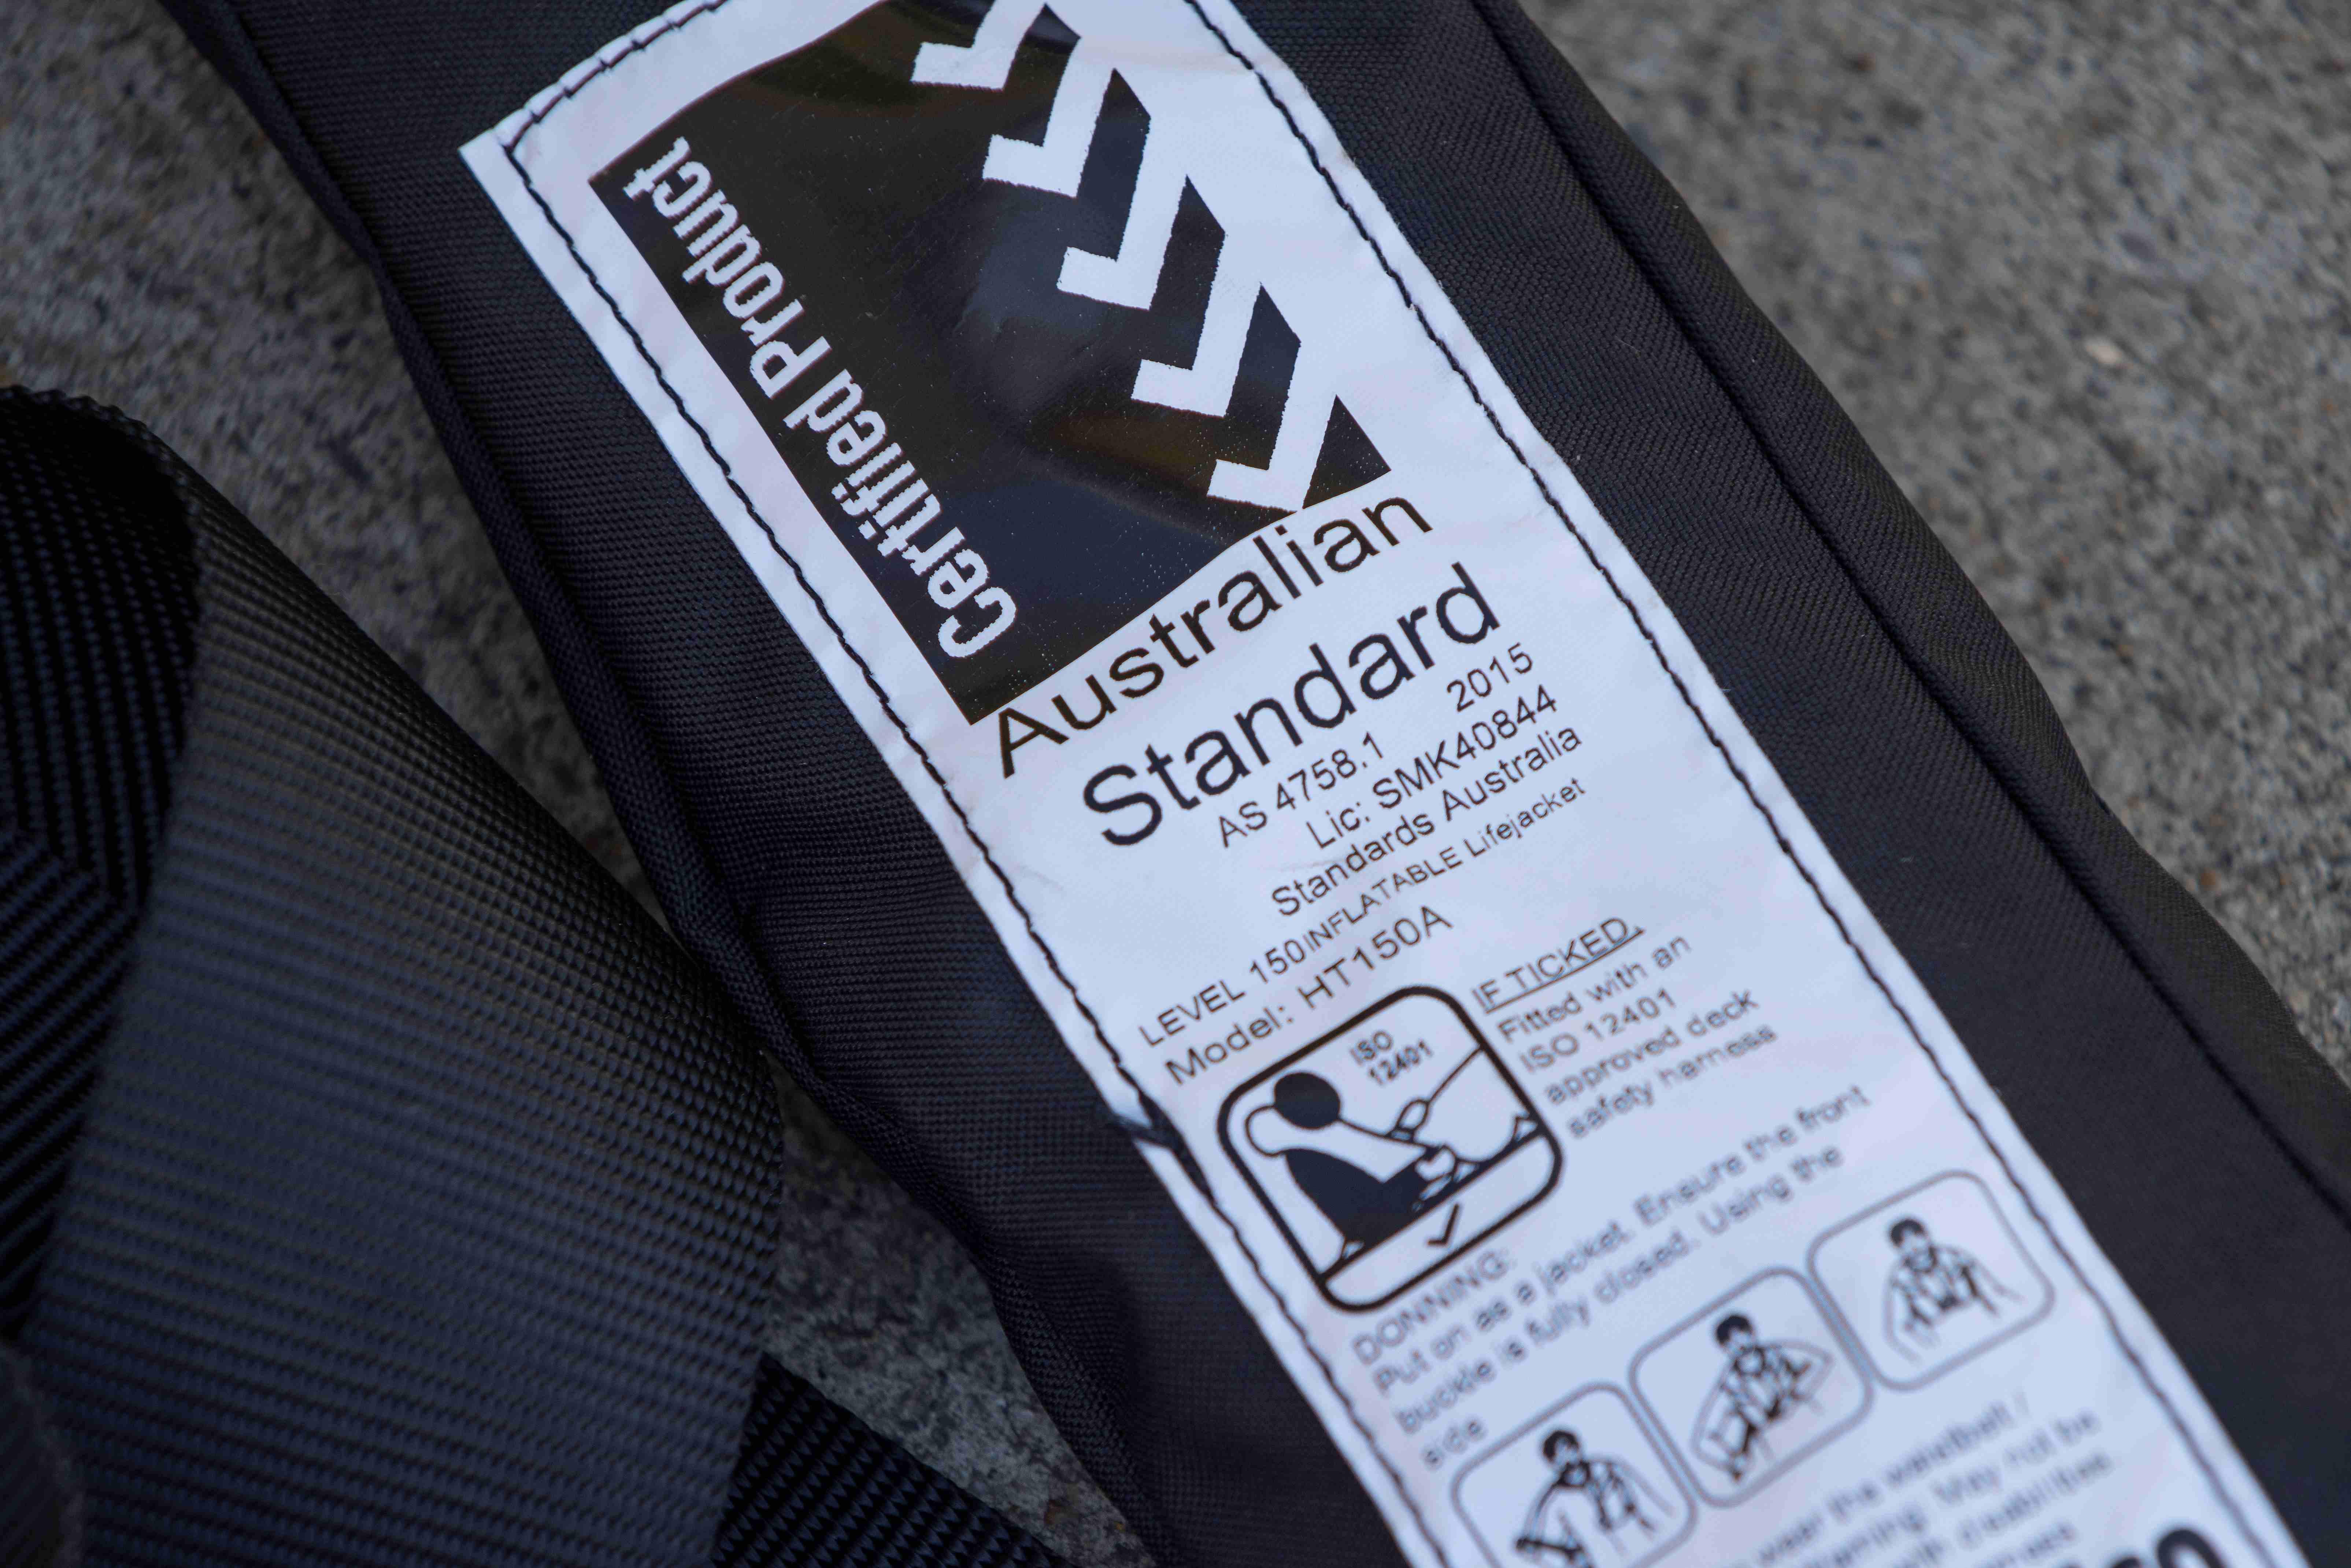 Lifejacket showing Australian Standard 4758